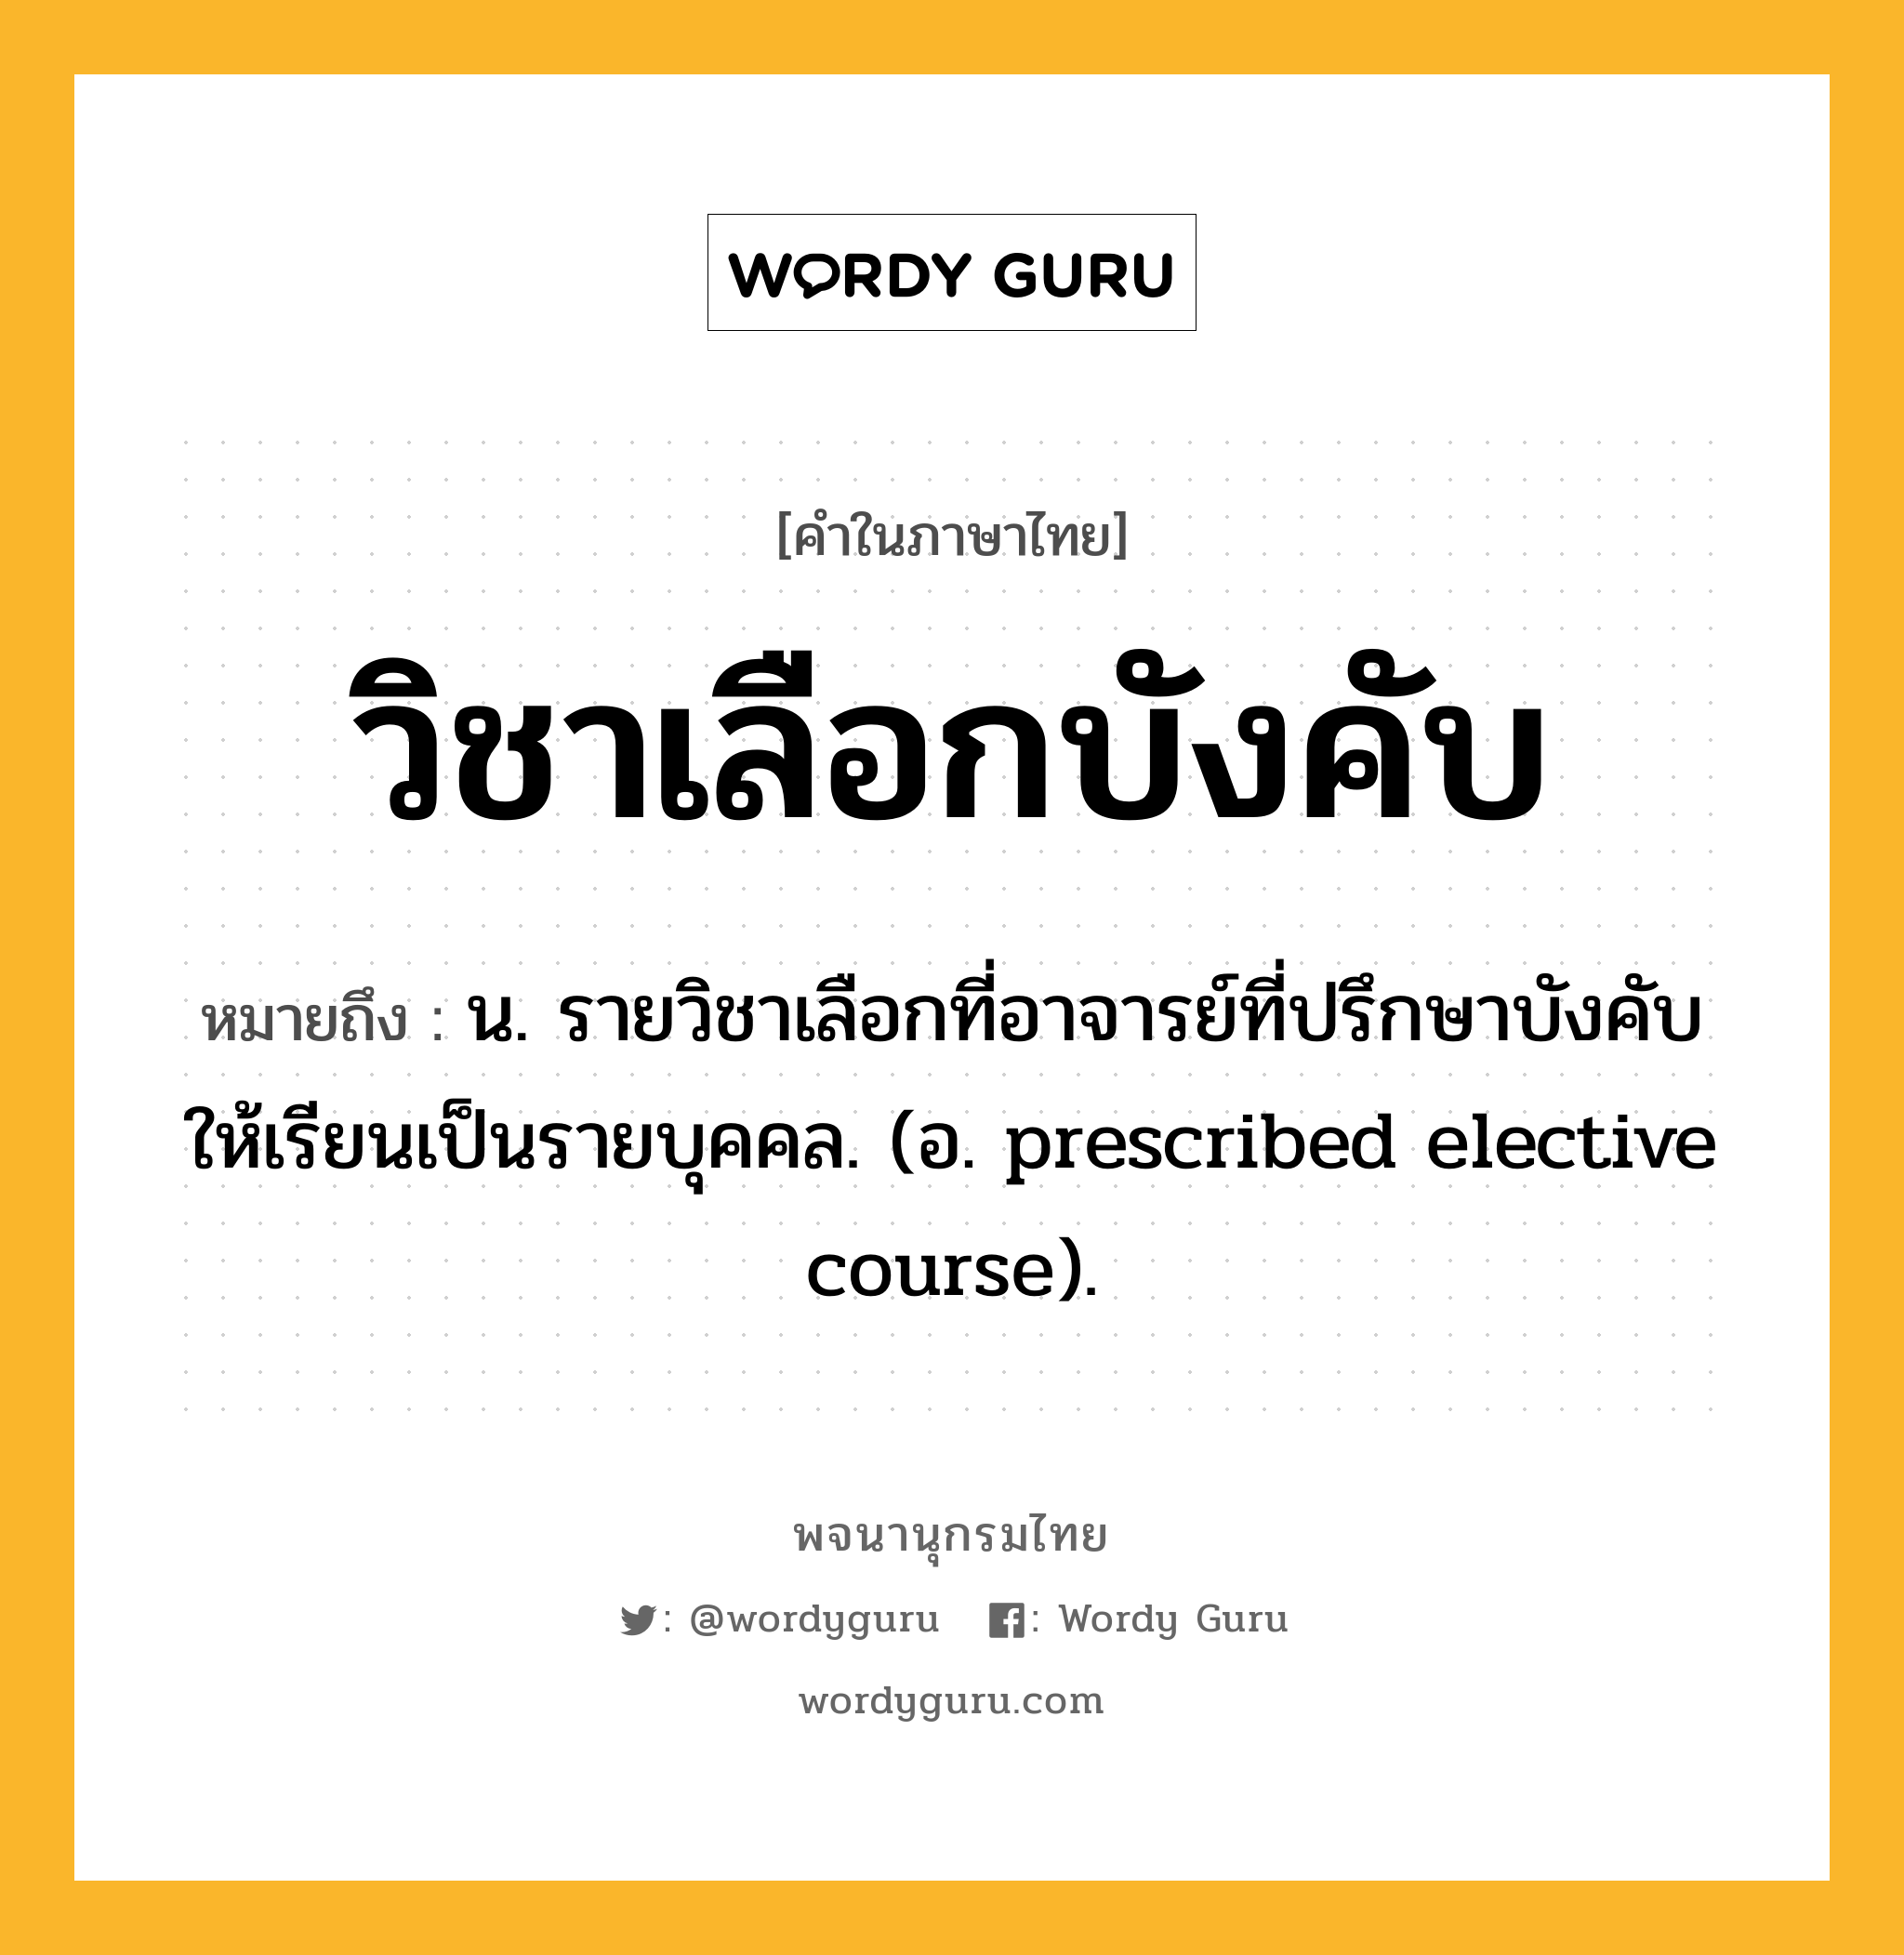 วิชาเลือกบังคับ ความหมาย หมายถึงอะไร?, คำในภาษาไทย วิชาเลือกบังคับ หมายถึง น. รายวิชาเลือกที่อาจารย์ที่ปรึกษาบังคับให้เรียนเป็นรายบุคคล. (อ. prescribed elective course).